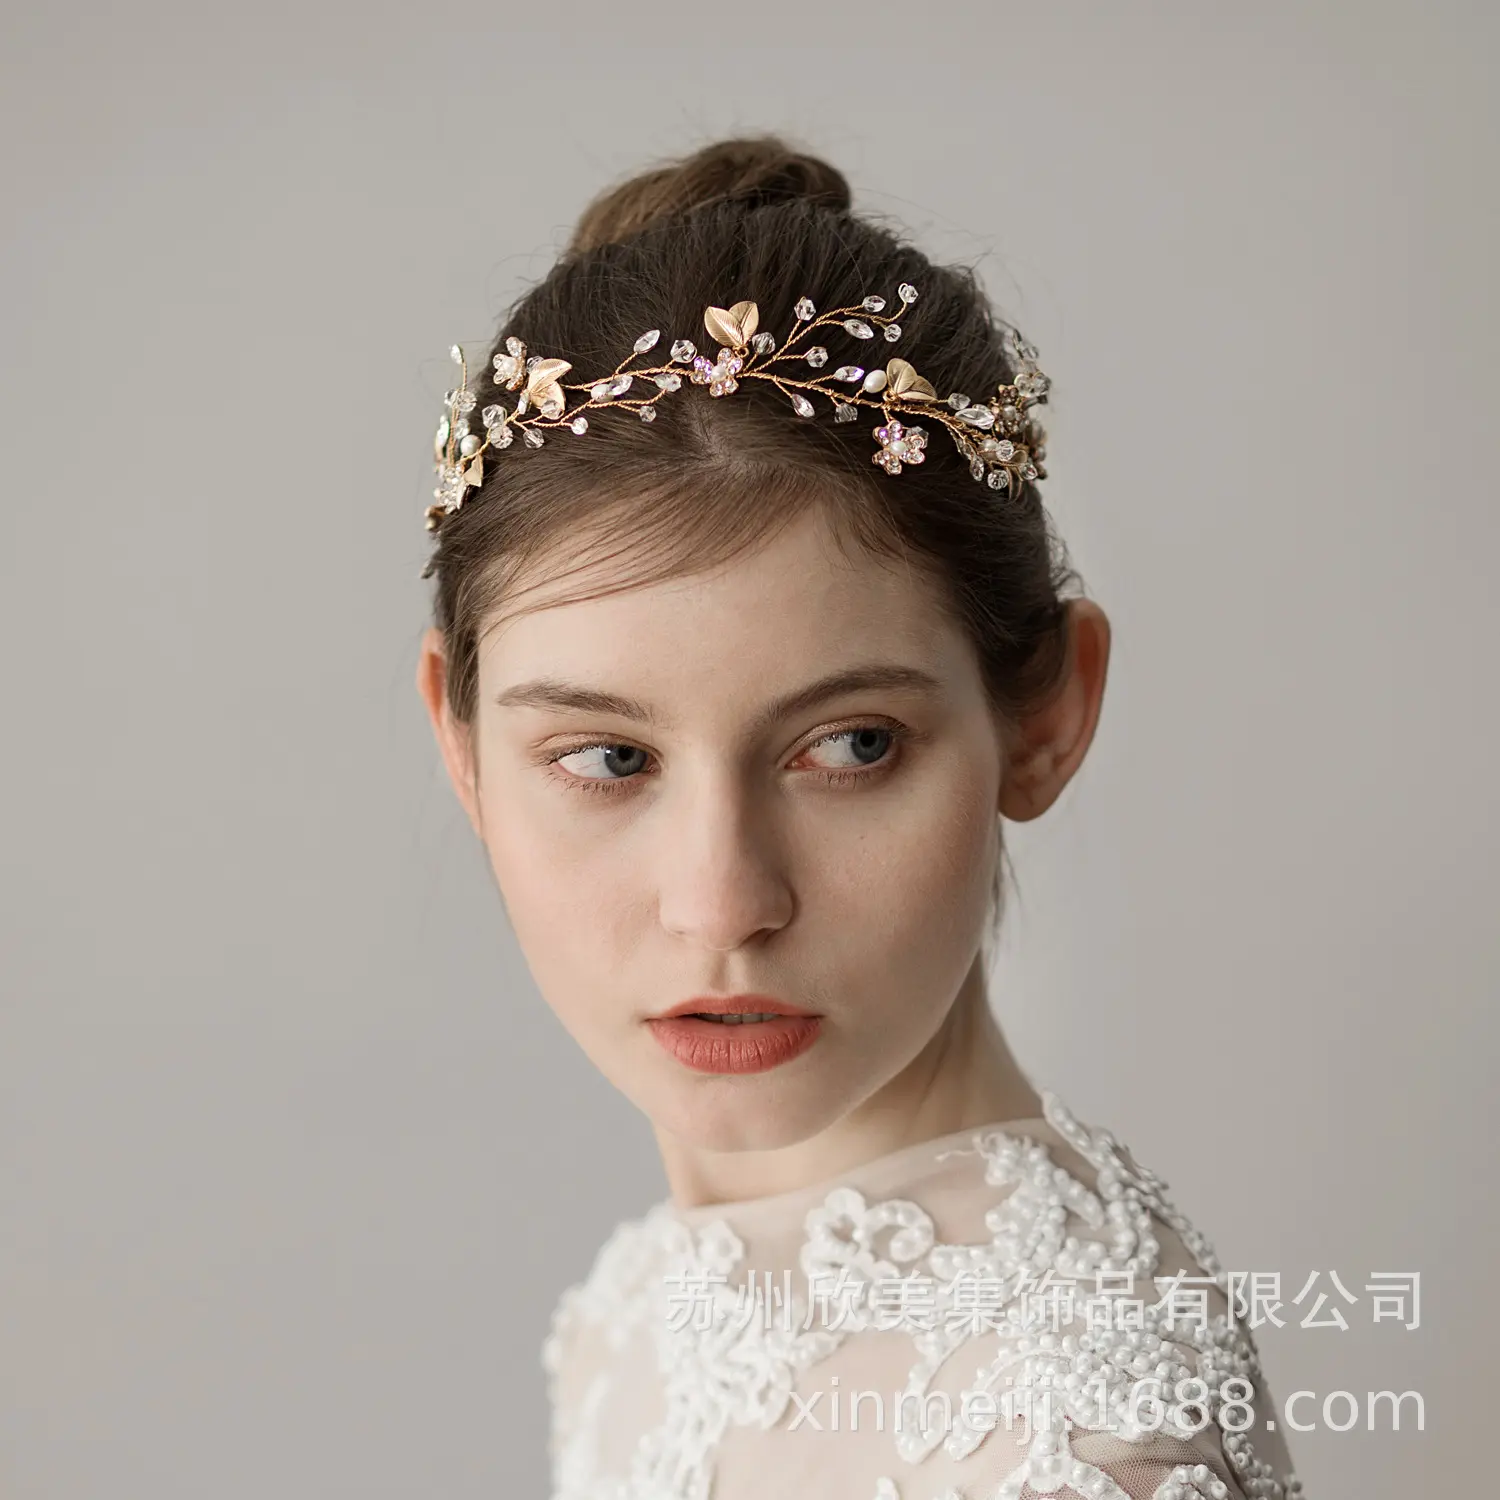 HY 2312 O349 Sweet Crystal Branch Bridal headwear Natural style Gold leaf bridal headband wedding accessories